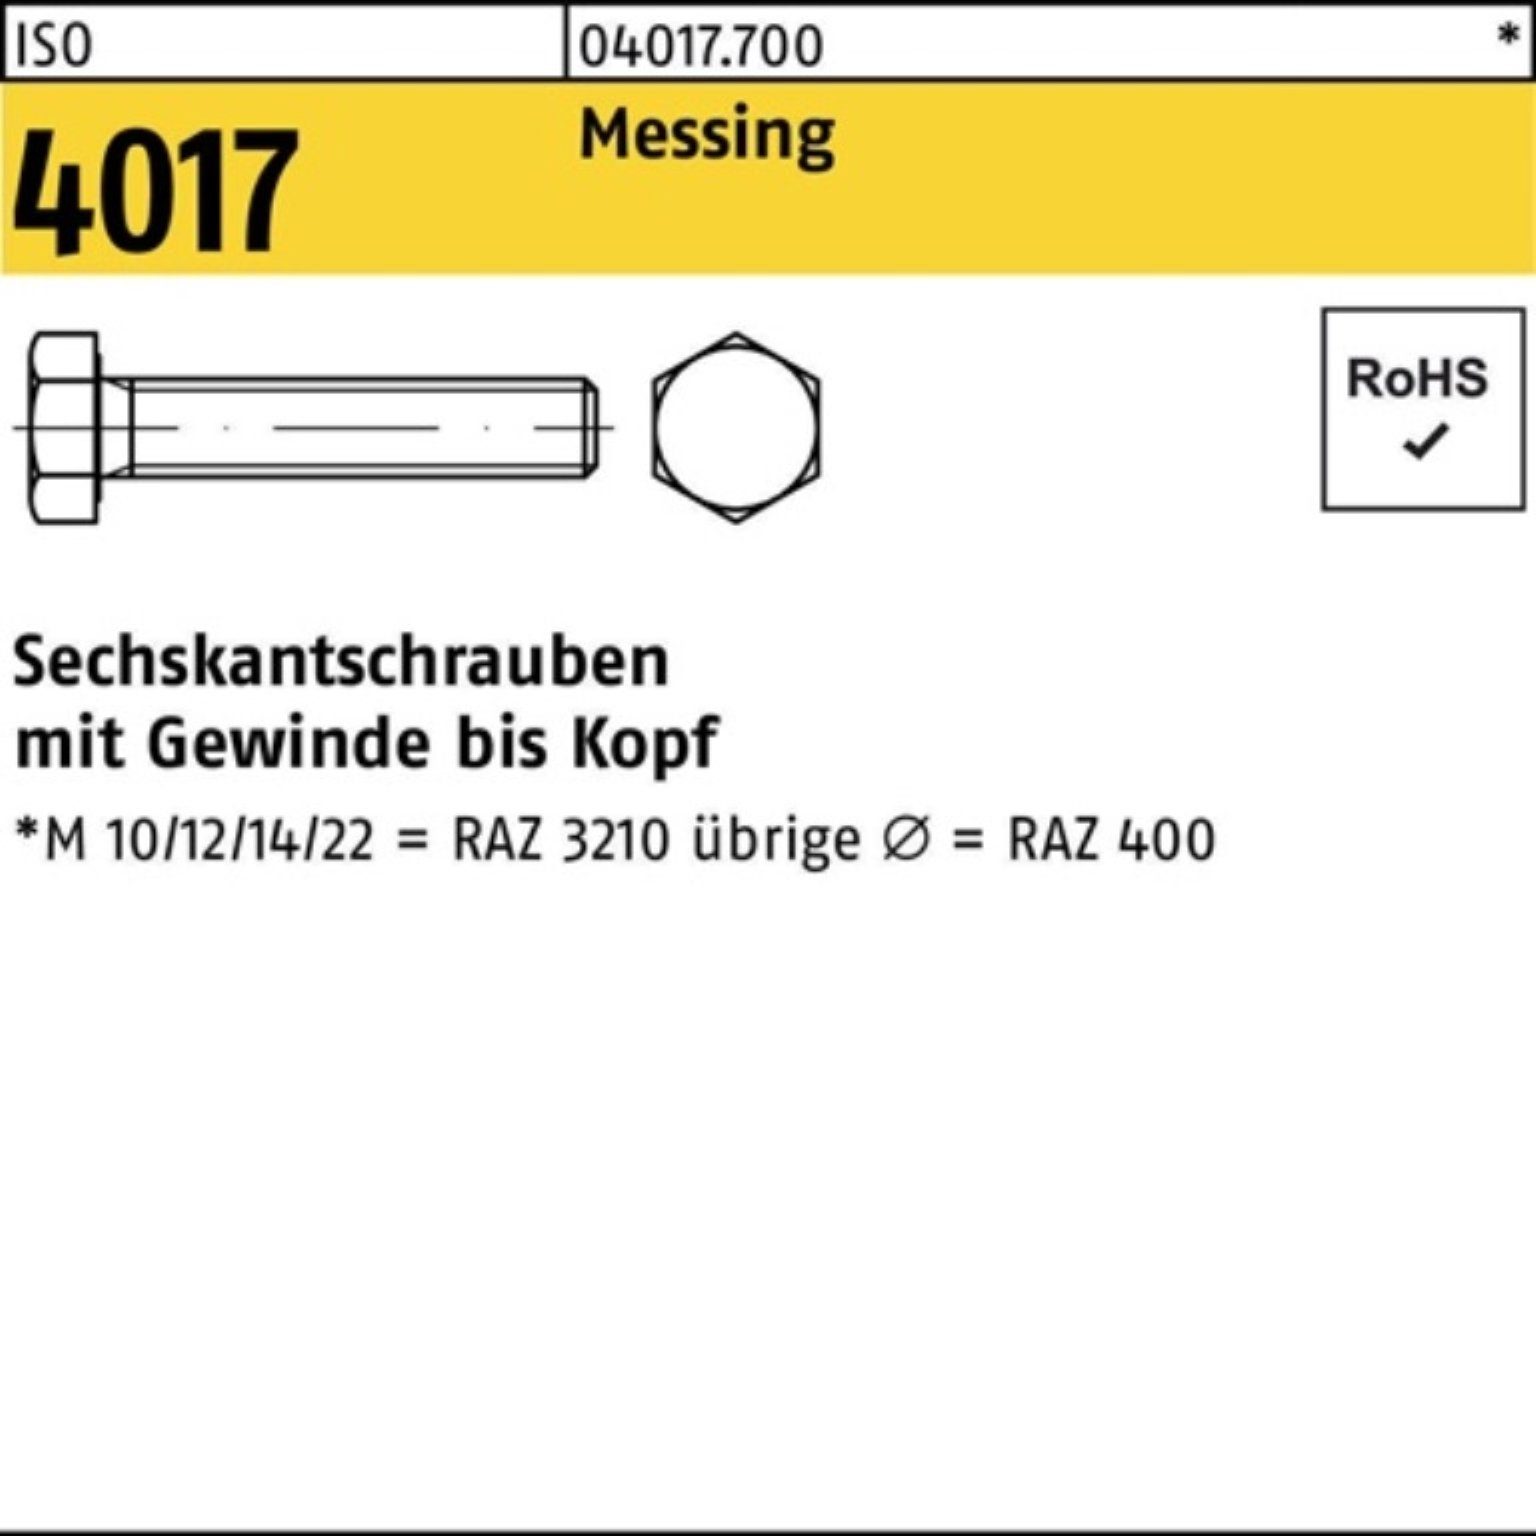 Bufab Sechskantschraube 100er Pack 4017 Sechskantschraube VG 50 Messing ISO 100 ISO Stück M4x